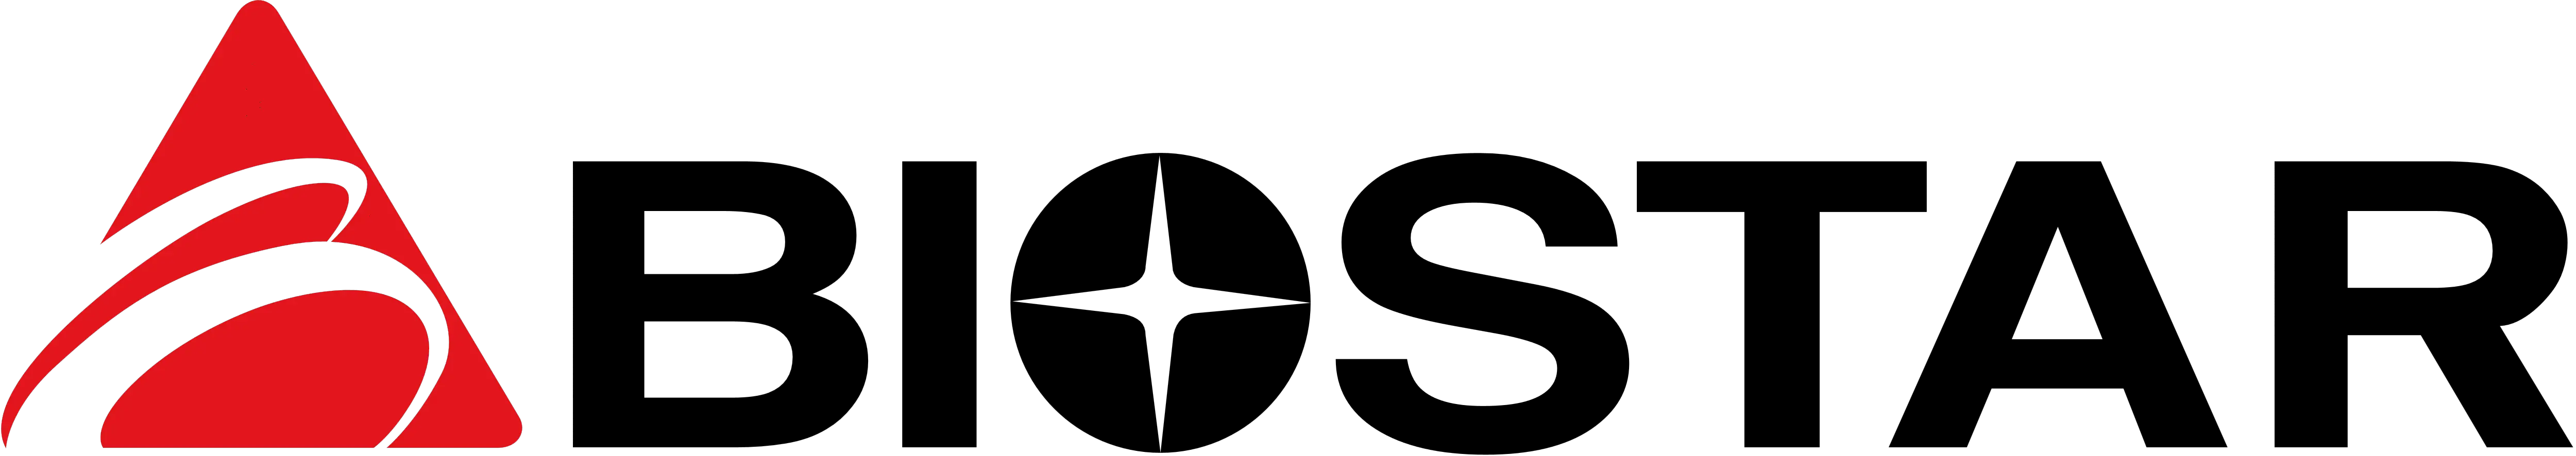 BIOSTAR-logo